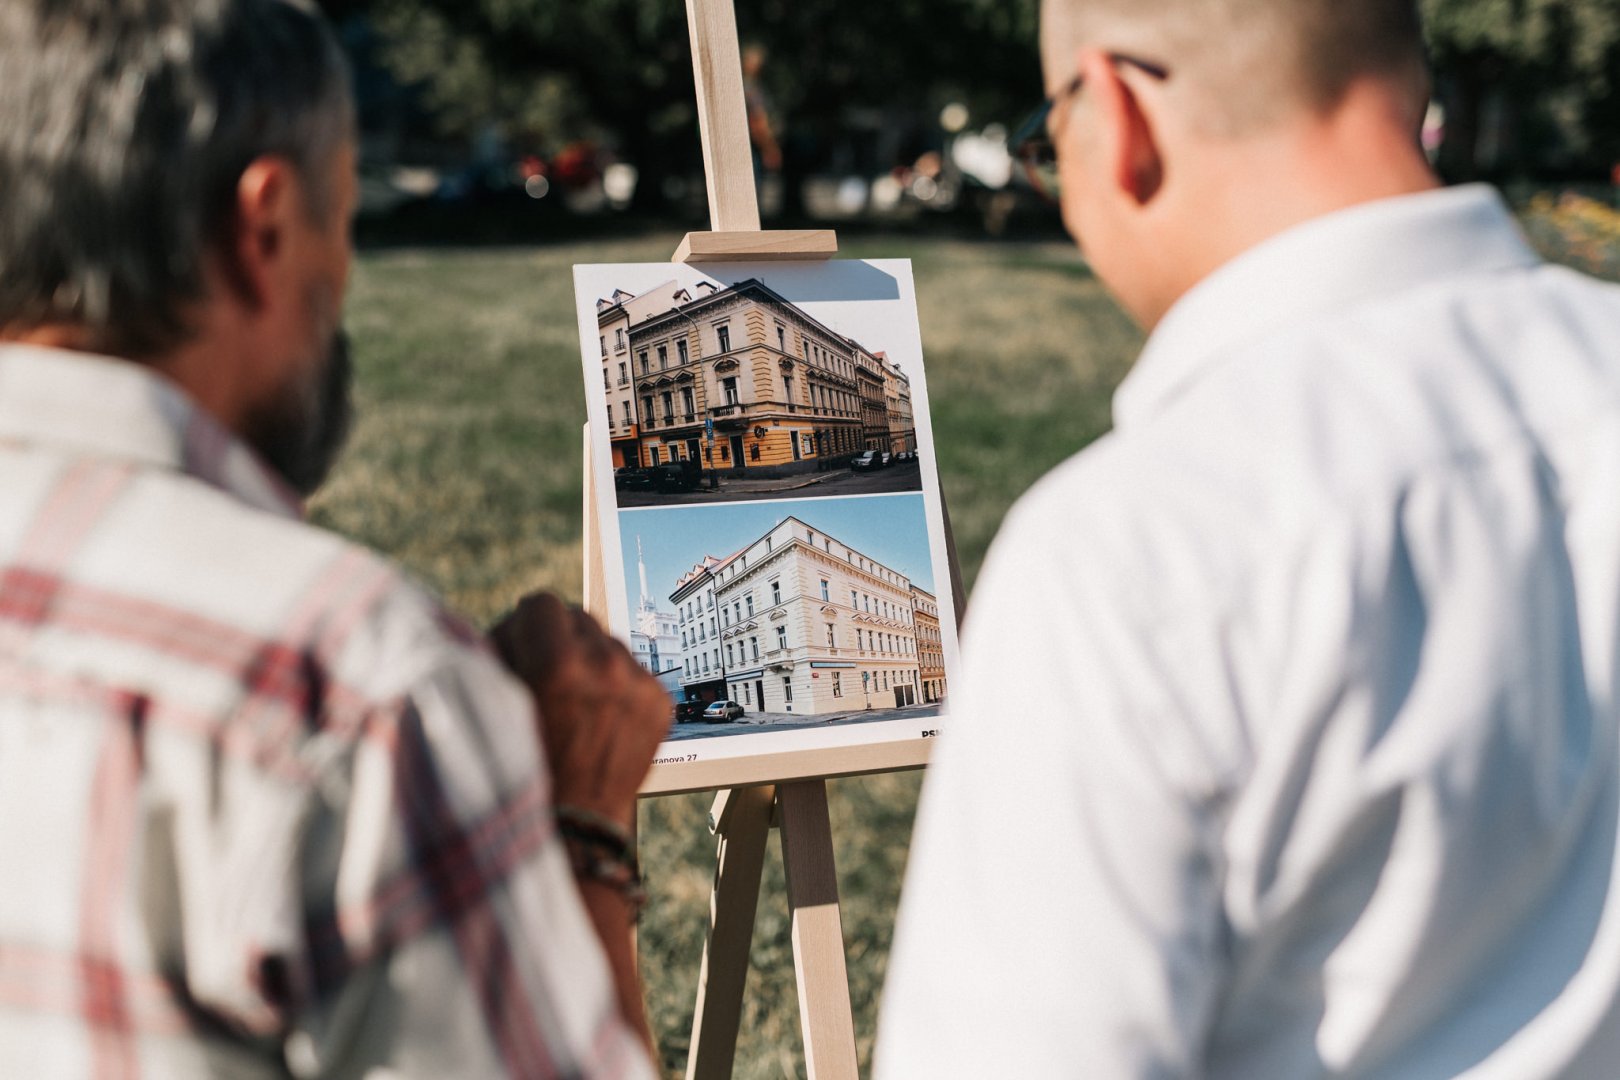 Setkání majitelů nemovitostí na Žižkově náměstí 24. 7. 2019